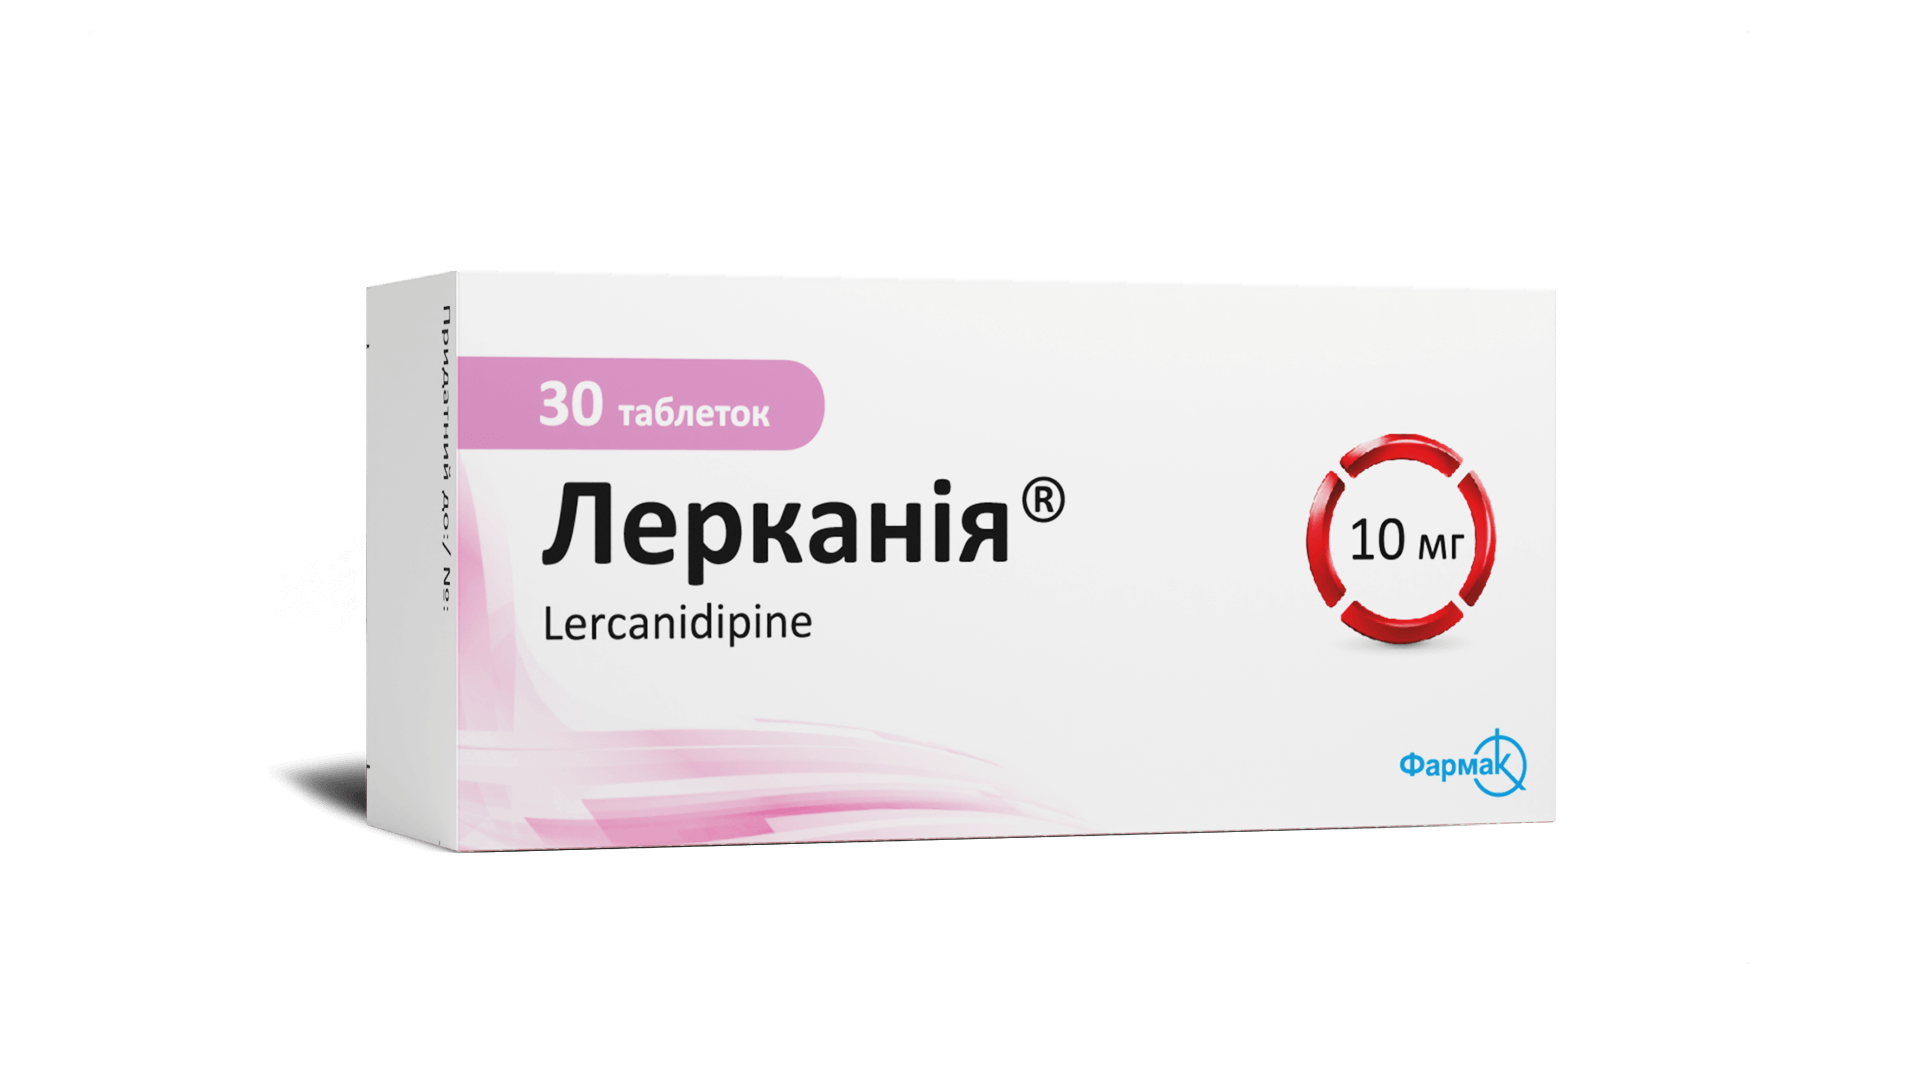 Лерканія®10 мг (1)